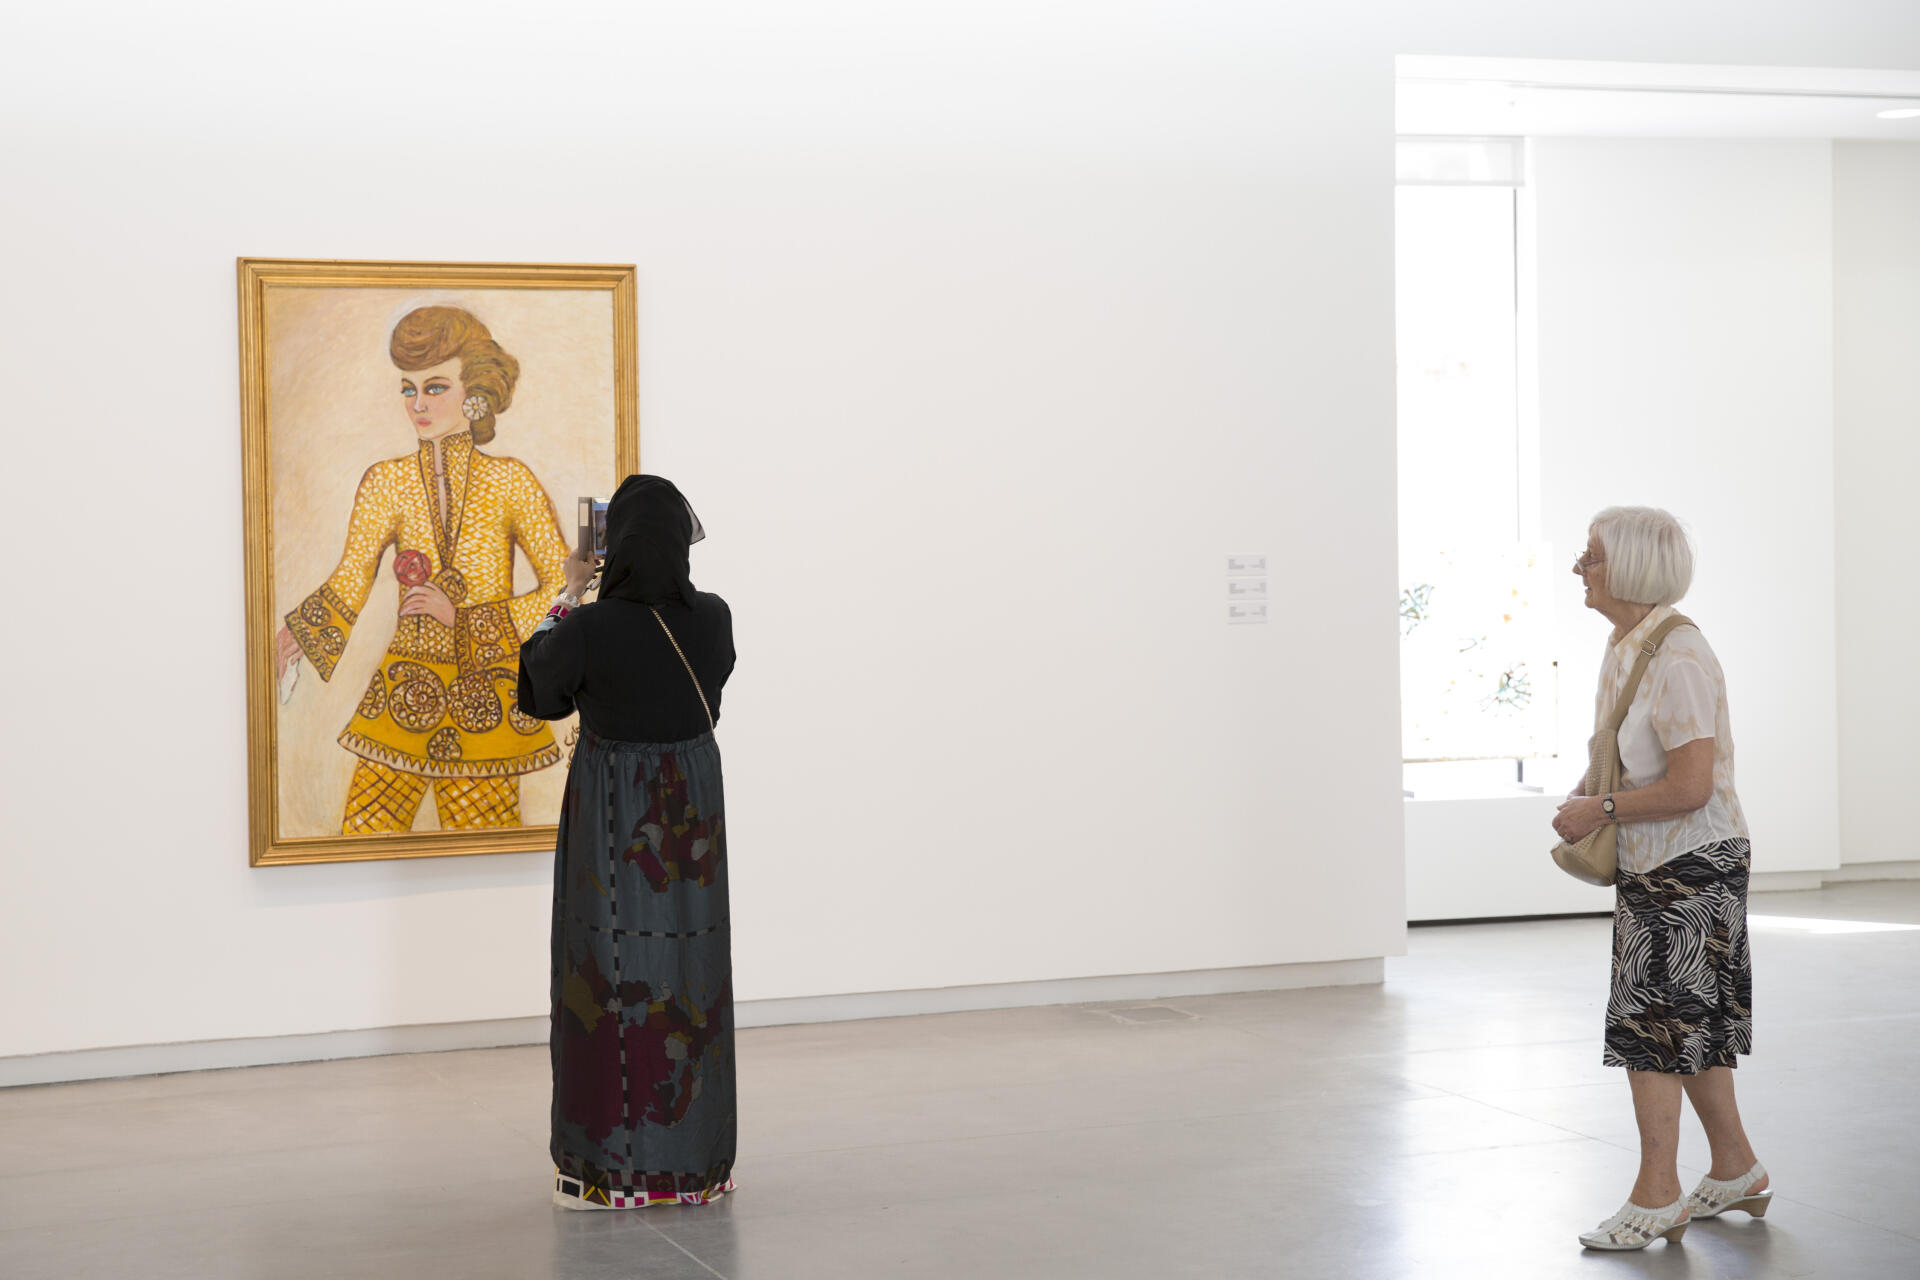 Le 5 mars 2015, lors de l'ouverture de la biennale de Chardja, une visiteuse prend en photo une œuvre de Fahrelnissa Zeid.